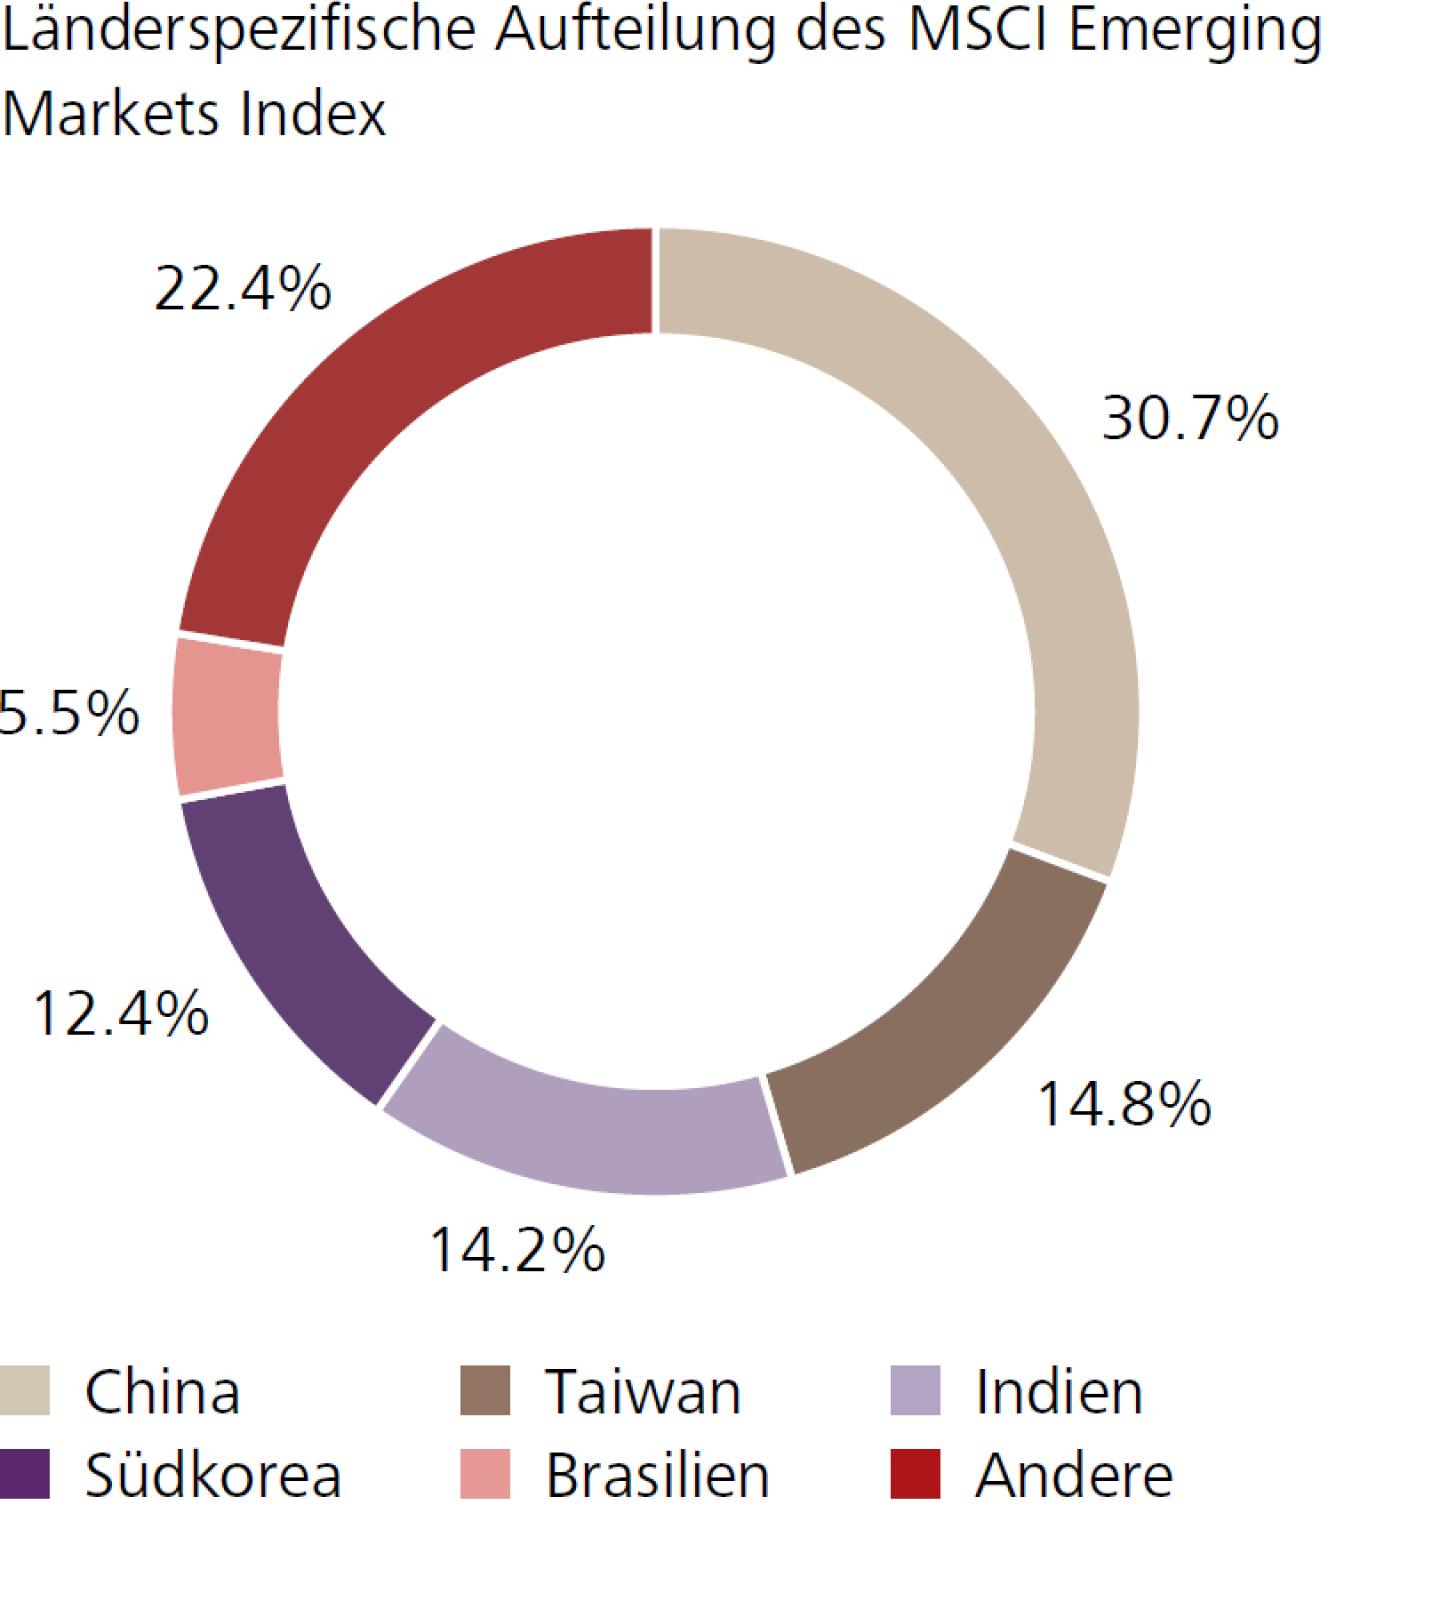 Länderspezifische Aufteilung des MSCI Emerging Markets Index